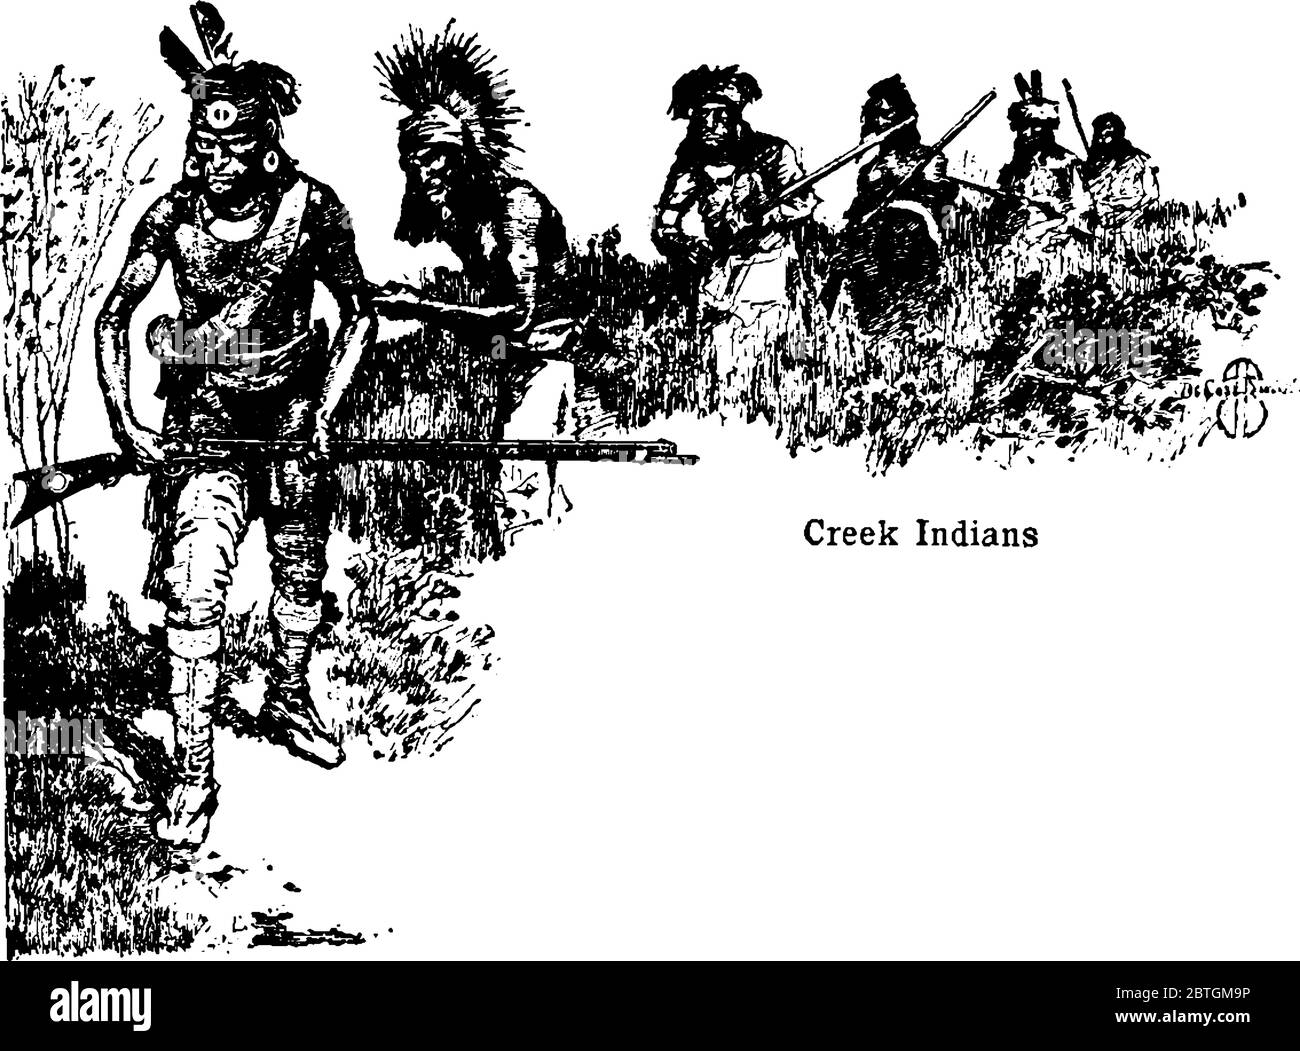 Dies ist einer der fünf zivilisierten Stämme genannt Creek Indianer. Sie lebten in südöstlichen Wäldern. In diesem Bild sind die Creek Indianer trave Stock Vektor